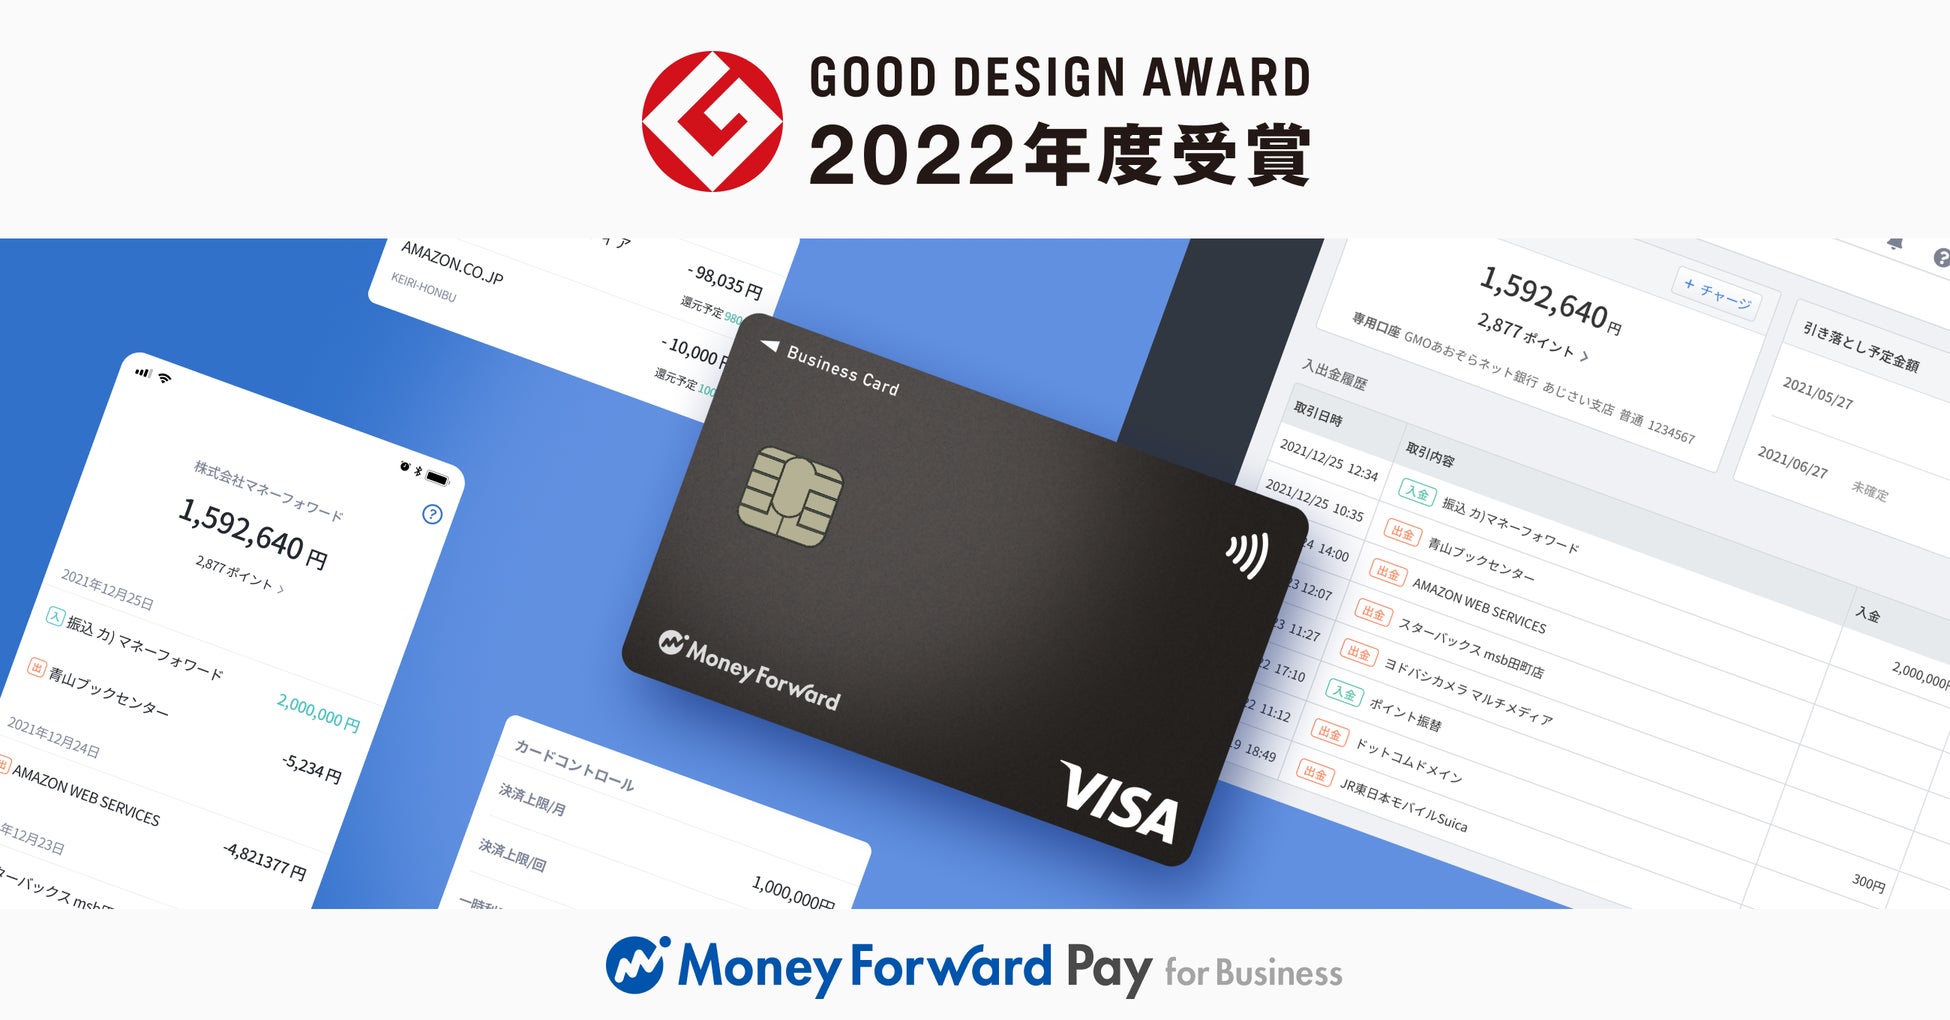 『マネーフォワード Pay for Business』が、「2022年度グッドデザイン賞」を受賞